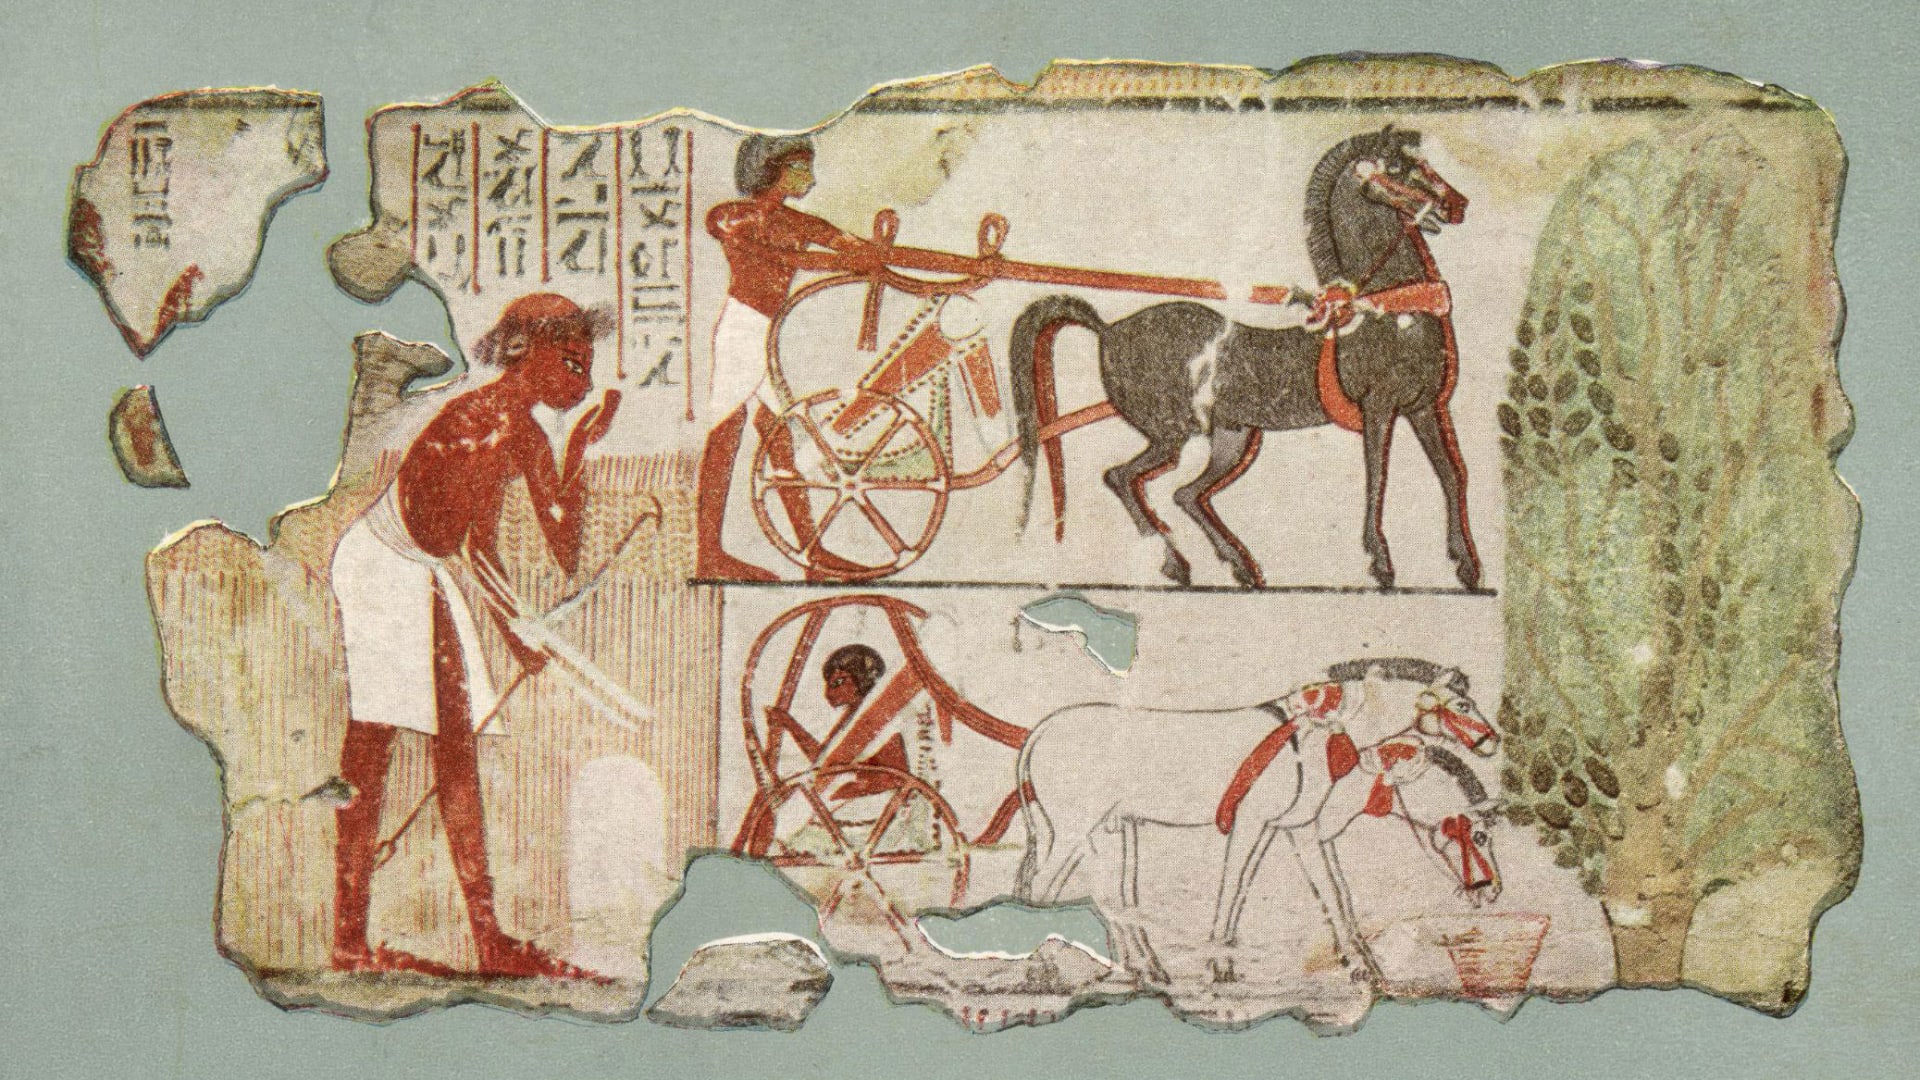 لوحة جدارية من القرن الـ18 في مقبرة نب آمون في الأقصر، تظهر رجلاً مصرياً يرتدي مئزراً.